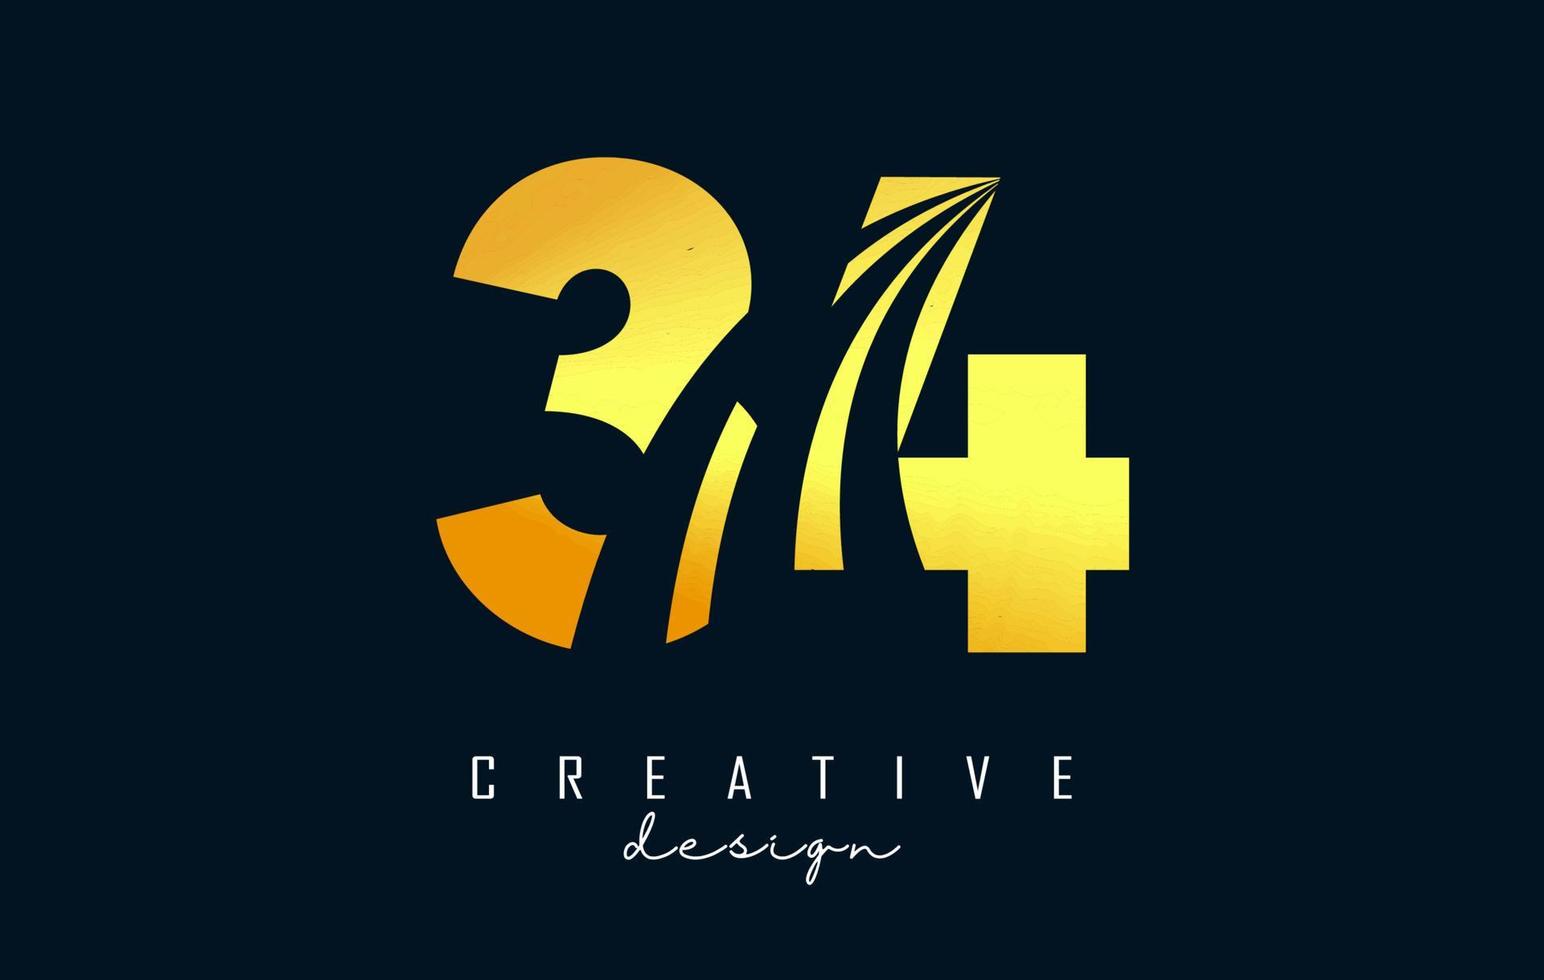 goldenes kreatives nummer 34 3 4 logo mit führenden linien und straßenkonzeptdesign. Nummer mit geometrischem Design. vektor